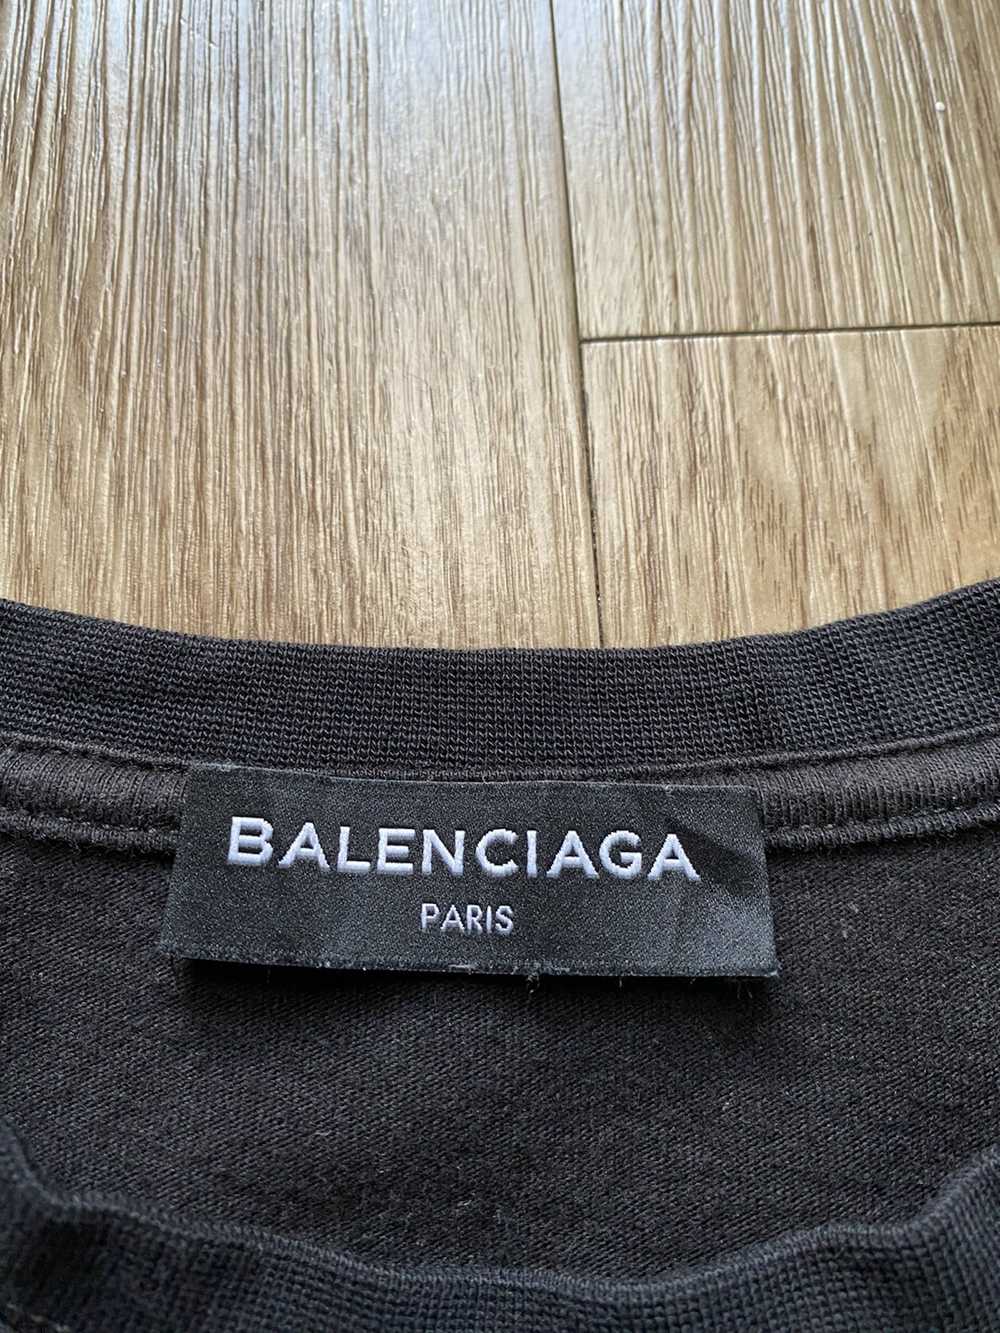 Balenciaga BALENCIAGA SS18 SINNERS TEE - image 10